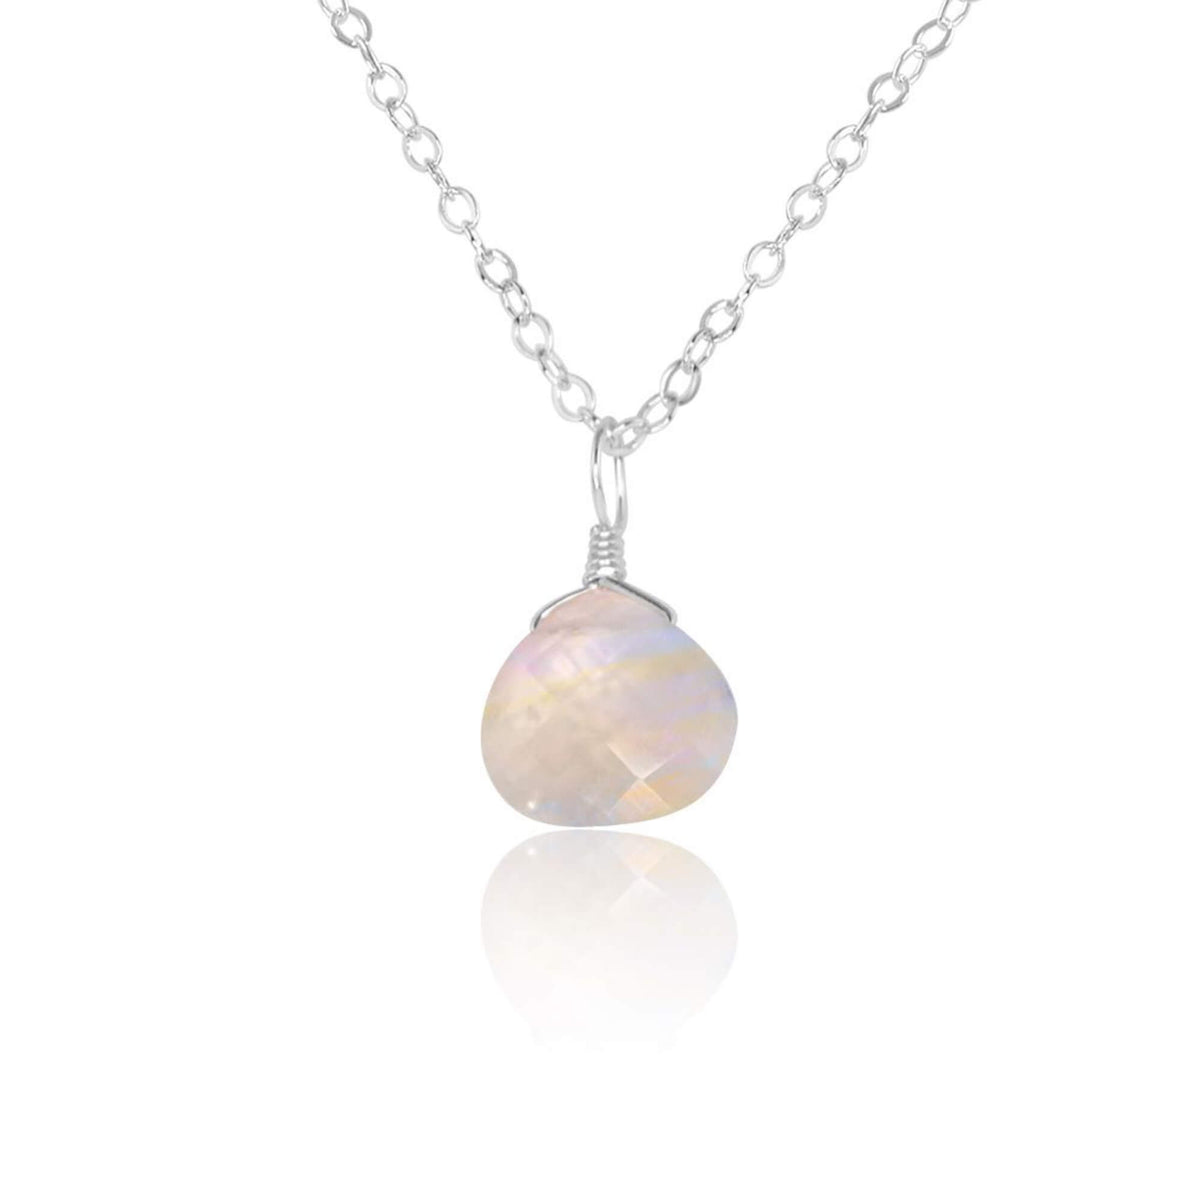 Teardrop Necklace - Rainbow Moonstone - Sterling Silver - Luna Tide Handmade Jewellery